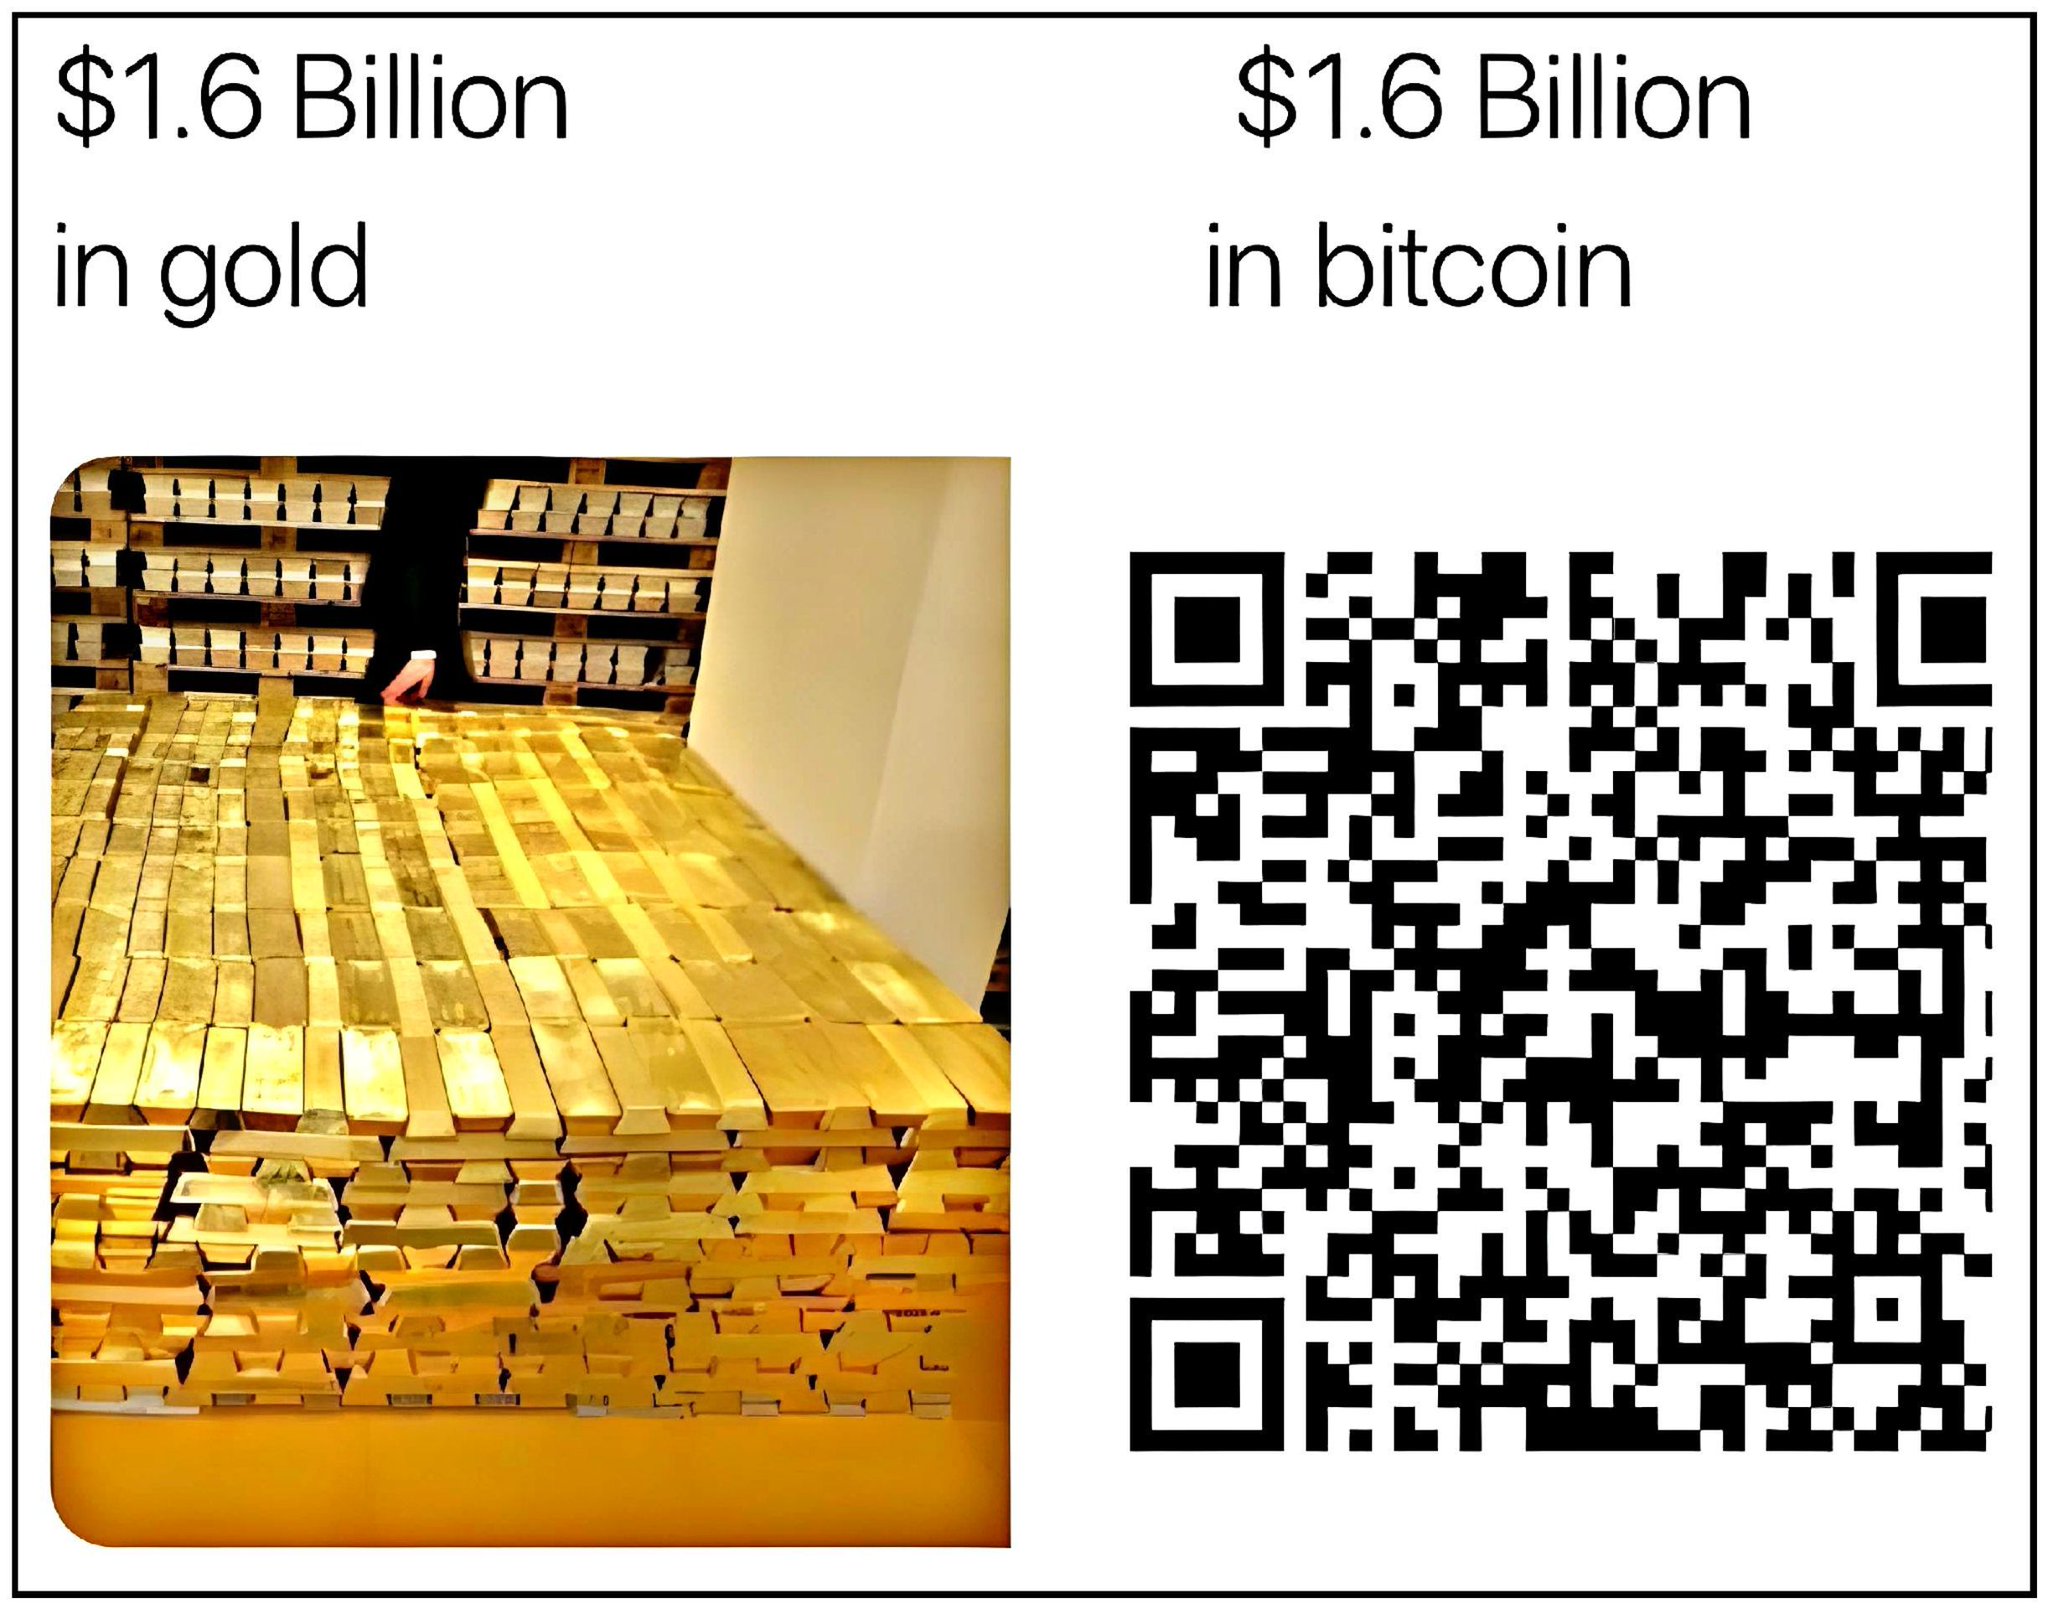 $1 .6 Billion $1 .6 Billion
in gold In bitcoin
- 1e! NE Y
*pro nes [=] ri [=
Ifll= p =
y a// 1 \ | "| An I L
ea TX
TAAS ce r